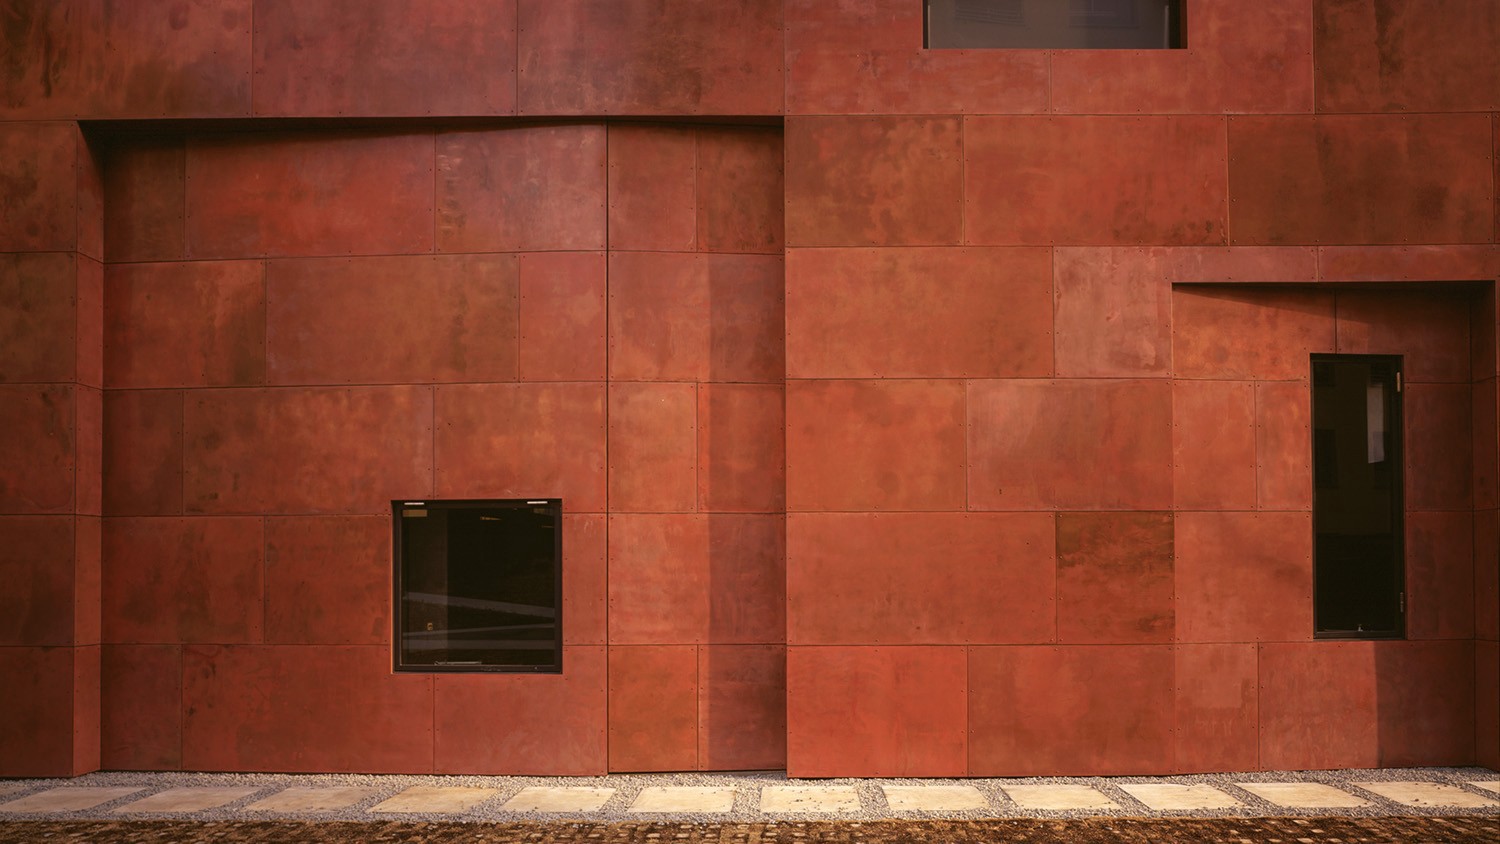 روانشناسی رنگ قرمز در معماری
